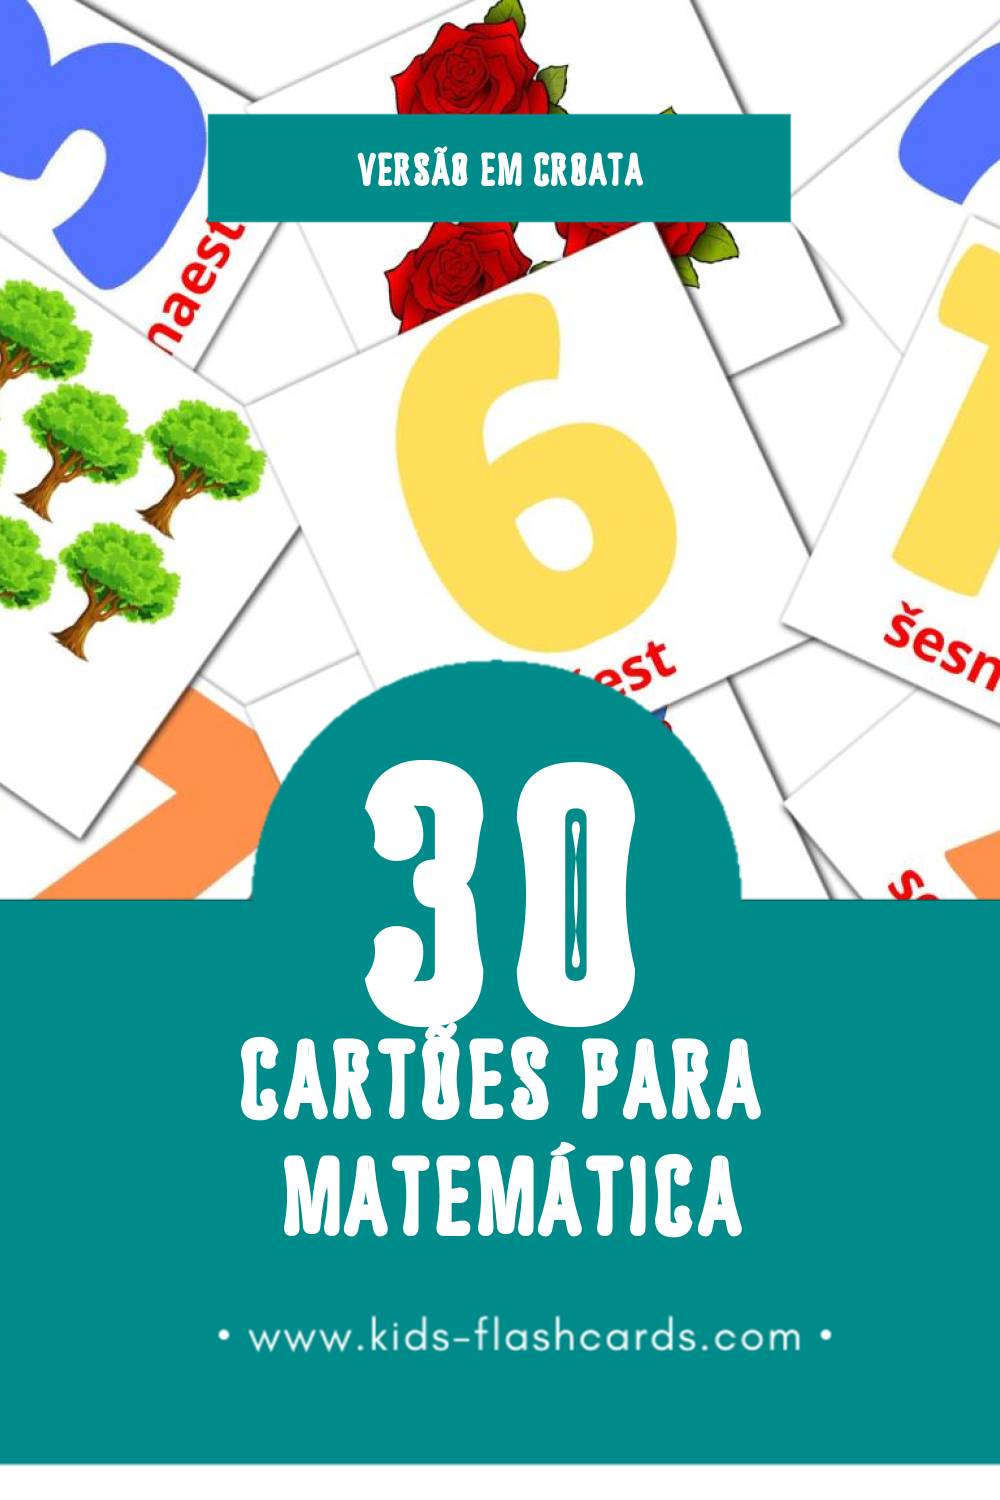 Flashcards de Matematika Visuais para Toddlers (30 cartões em Croata)